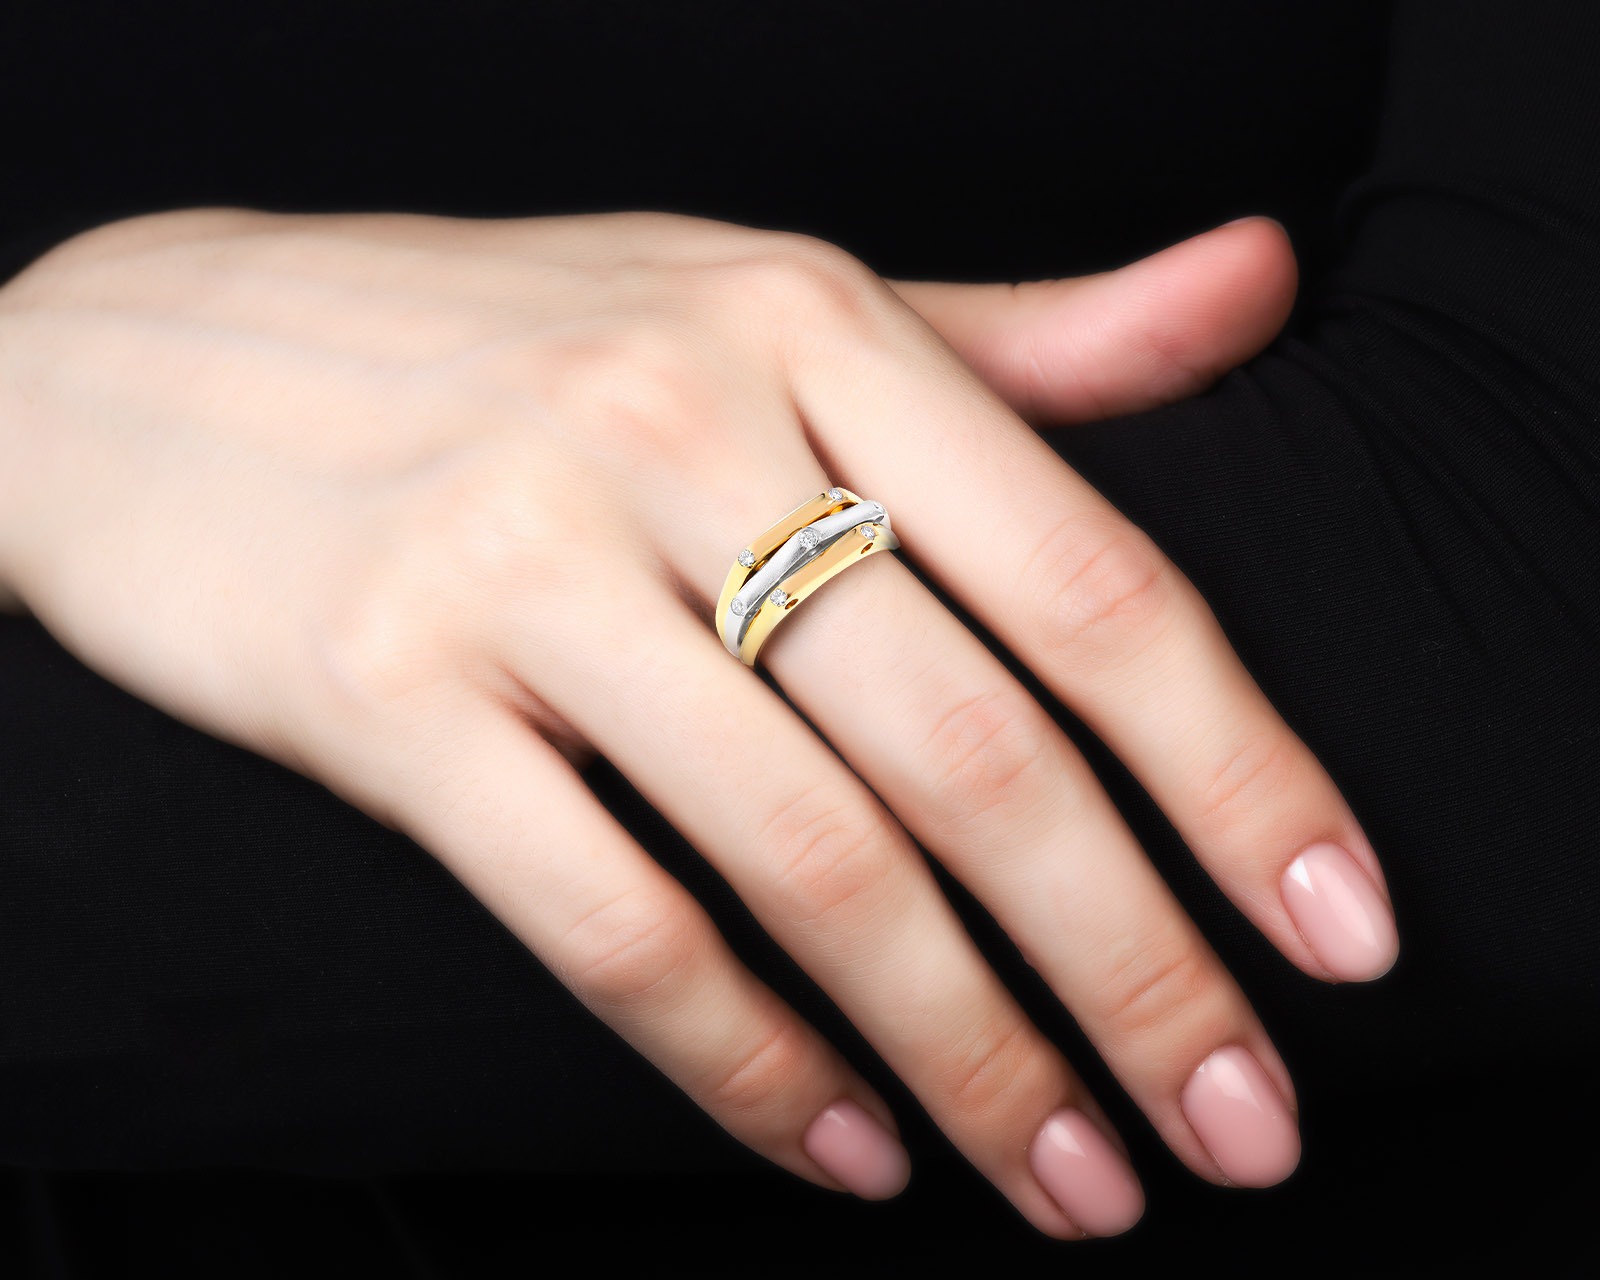 Стильное золотое кольцо с бриллиантами 0.13ct